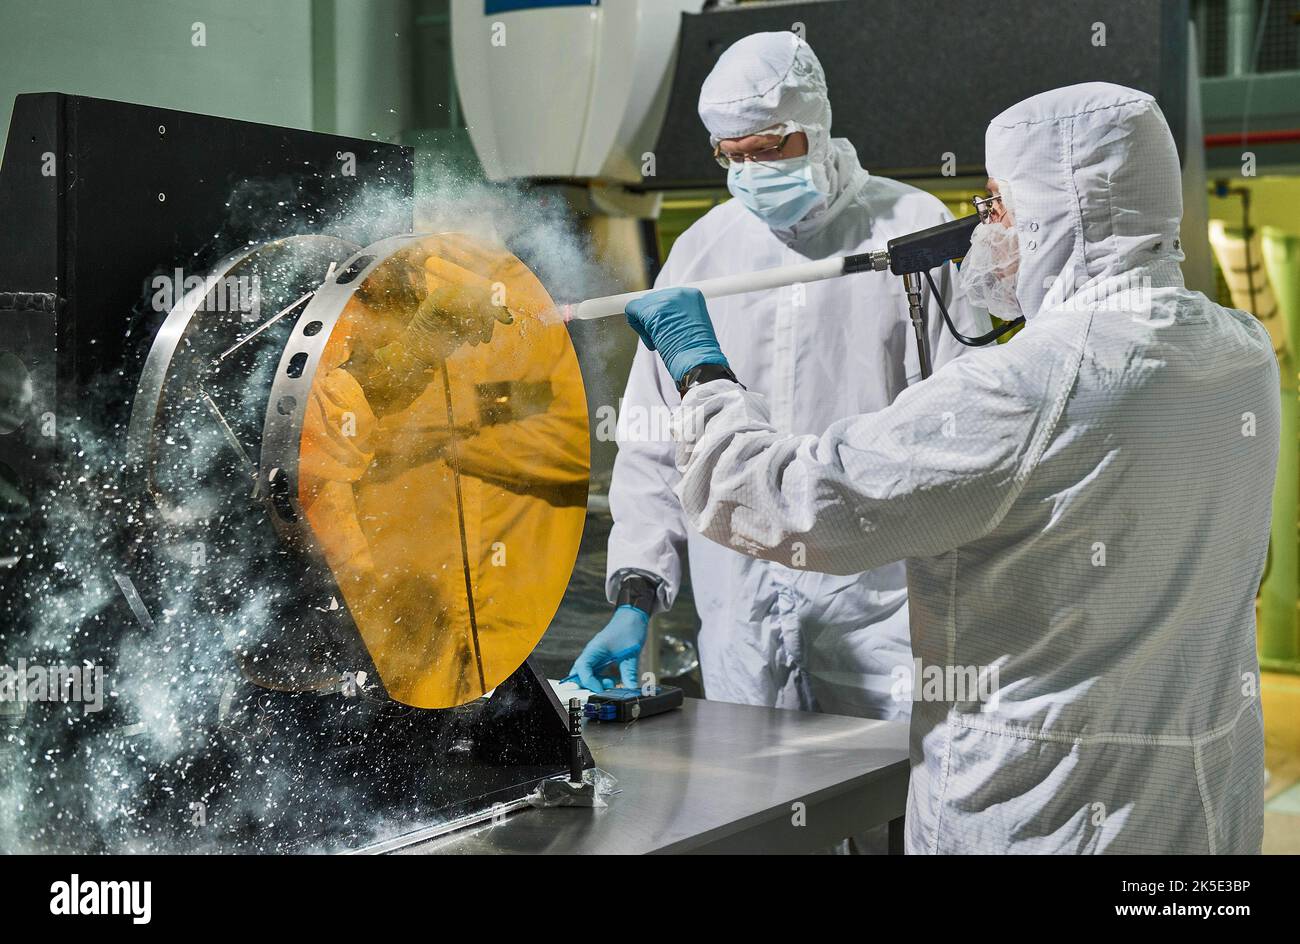 Vorbereitung des James Webb Space Telescope (JWST). Ingenieure reinigen Testspiegel mit Kohlendioxidschnee durch Abschießen von Kohlendioxidschnee an die Oberfläche können Ingenieure große Teleskopspiegel reinigen, ohne sie zu zerkratzen."die schneeähnlichen Kristalle stoßen Partikel und Moleküle aus dem Spiegel. Webb wird Licht aus 13,5 Milliarden Lichtjahren Entfernung erfassen. Dazu muss der Spiegel super sauber gehalten werden. Eine optimierte Version eines NASA-Bildes vom erfahrenen Hauptfotografen Chris Gunn. Quelle: NASA/Chris Gunn. Nur für redaktionelle Zwecke. Stockfoto